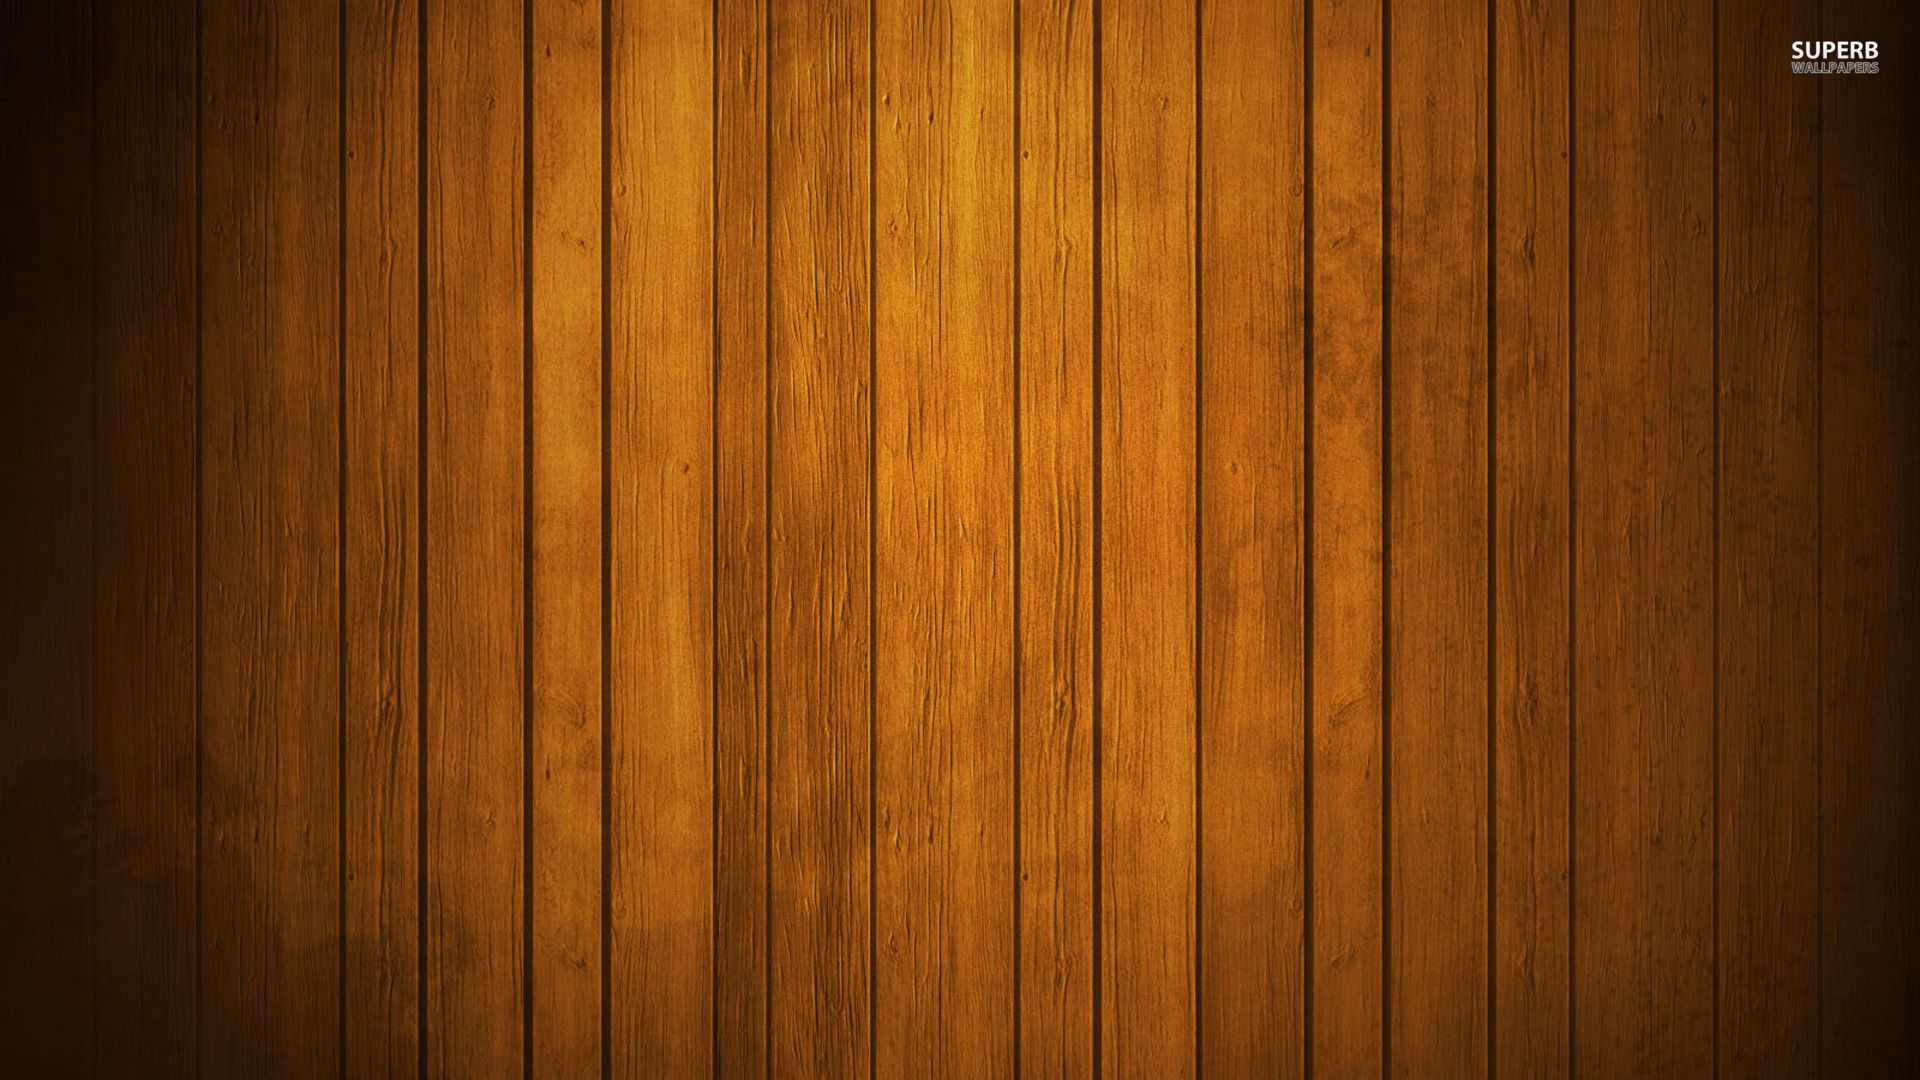 Với bộ sưu tập hình nền gỗ HD miễn phí từ chúng tôi, bạn không phải lo ngại về chất lượng ảnh. Với những thiết kế độc đáo và đa dạng về tông màu, bạn có thể dễ dàng tìm được ảnh nền gỗ phù hợp với phong cách của mình. Tải xuống ngay để trải nghiệm những bức ảnh nền gỗ đẹp nhất.